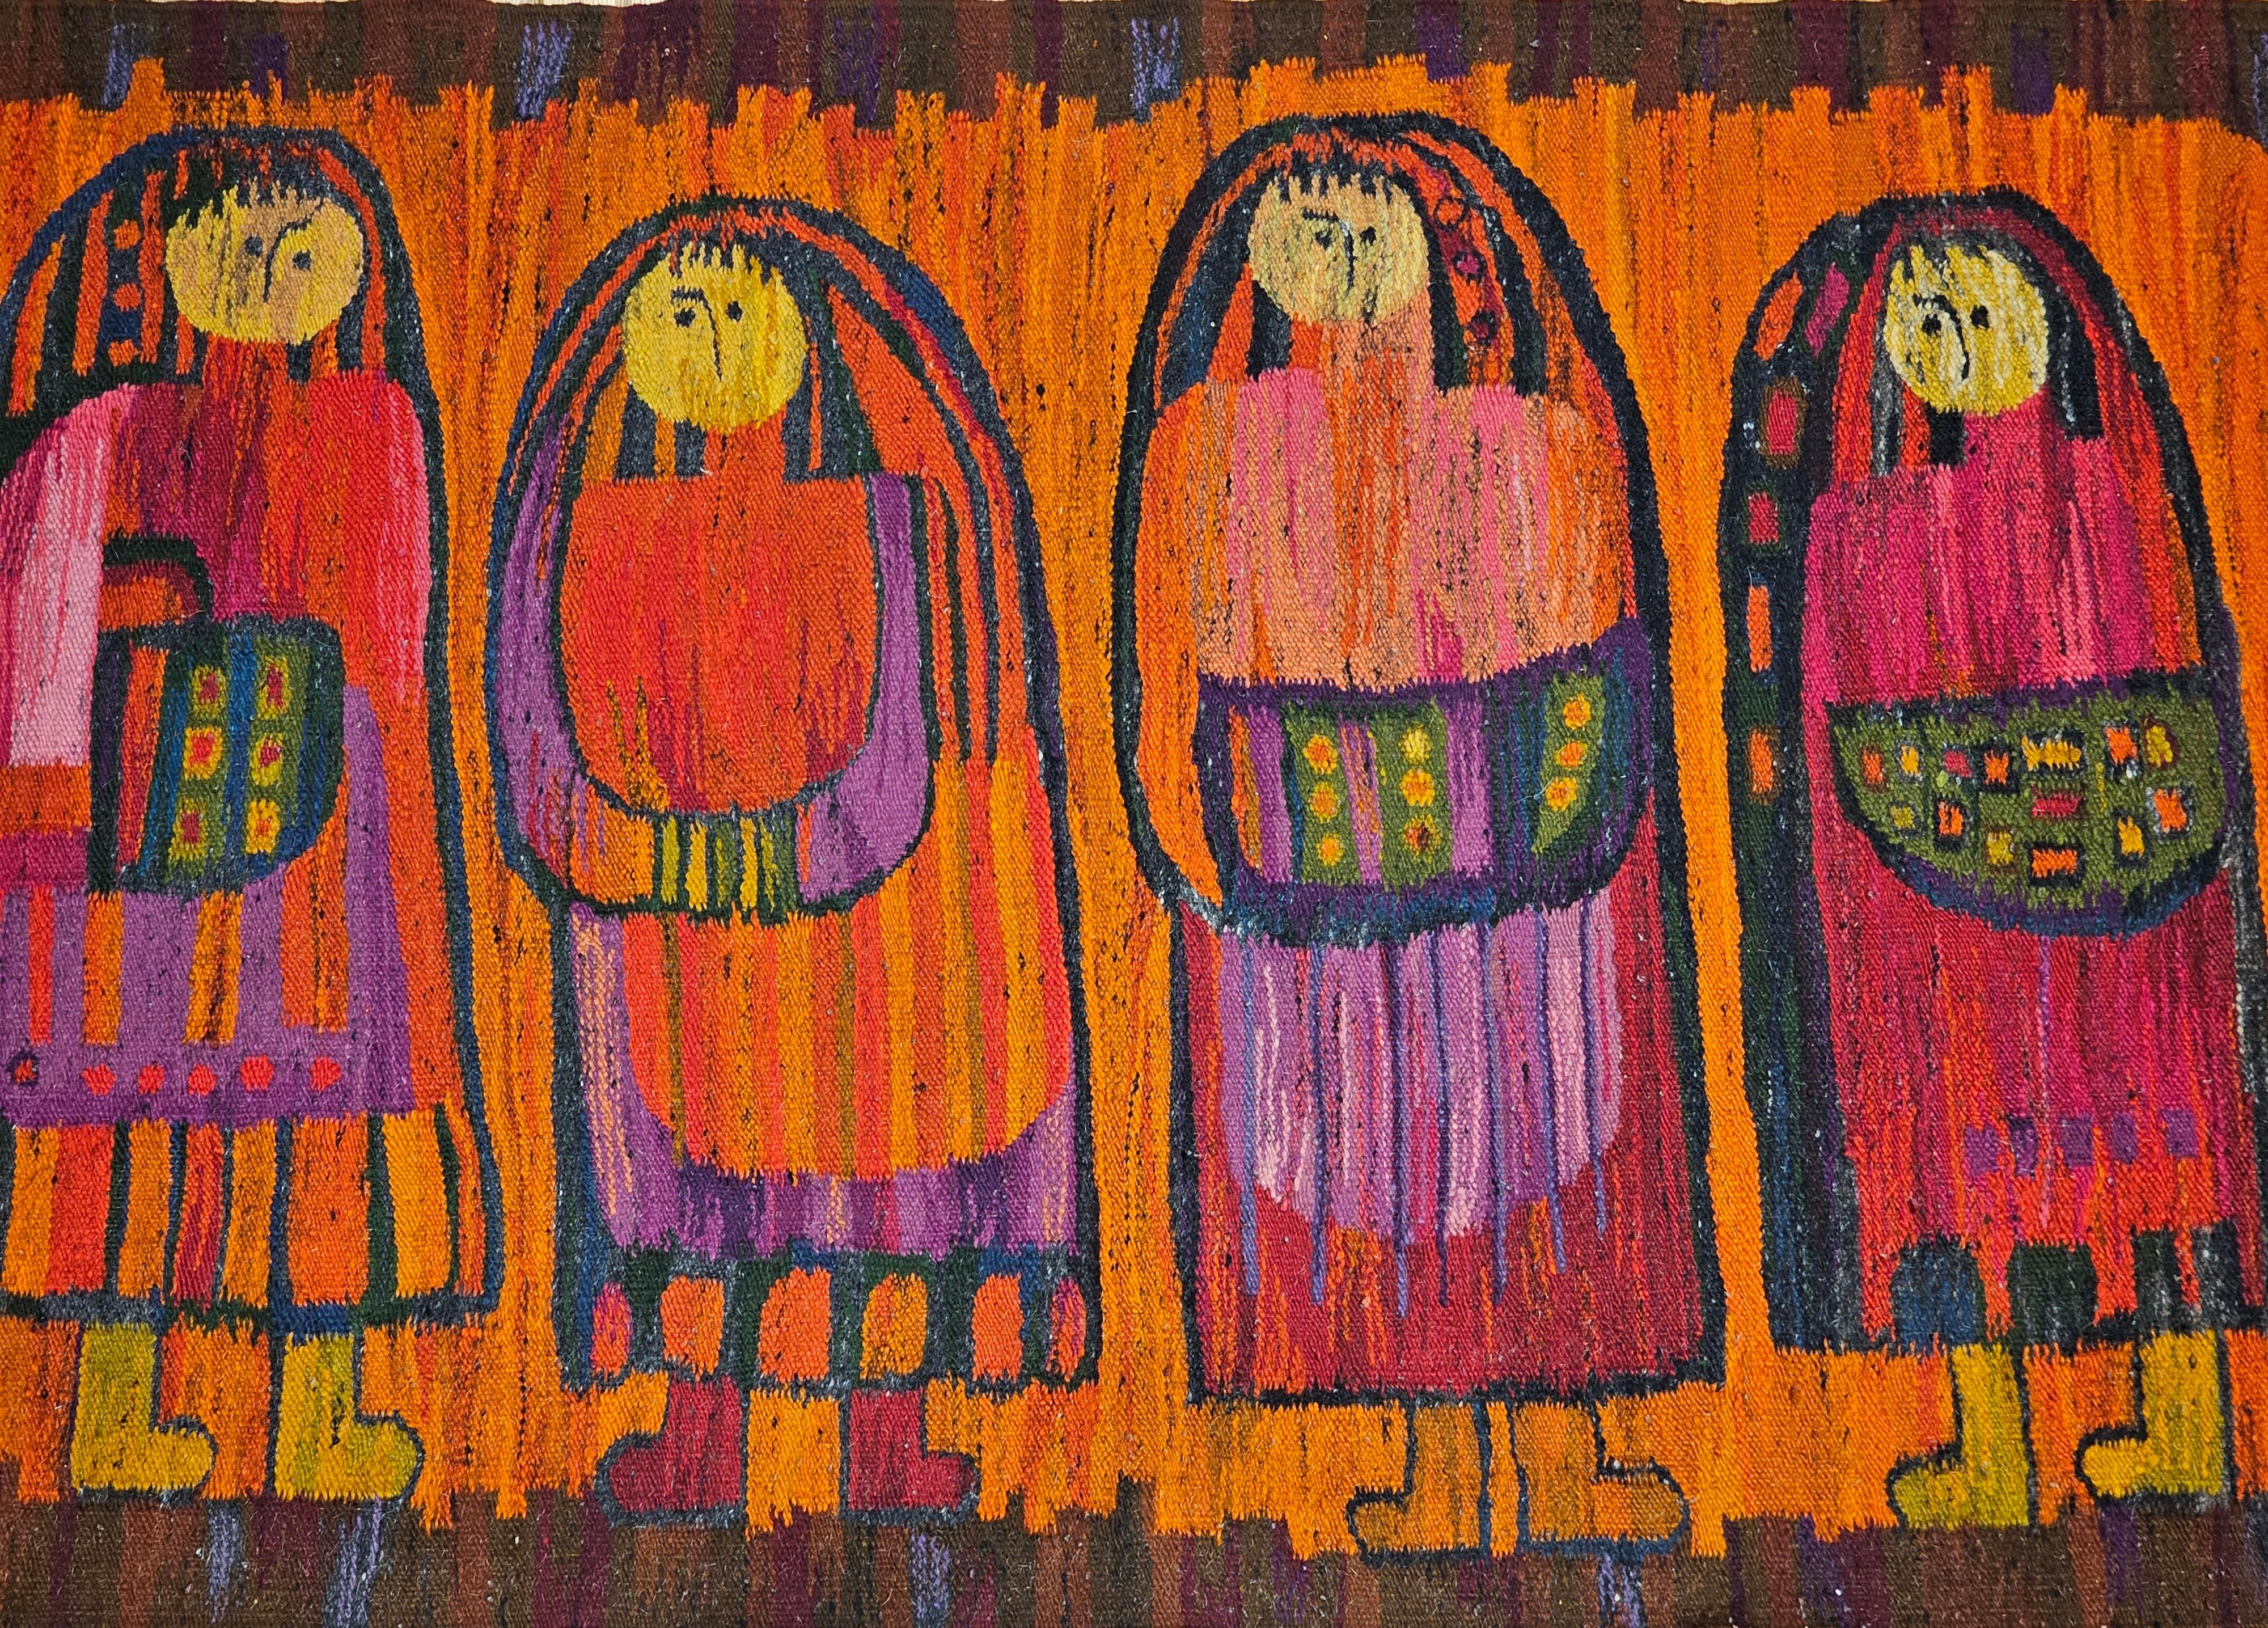 Der Wandteppich mit folkloristischem Design, der vier junge Schulmädchen in traditionellen Kleidern in den leuchtenden 